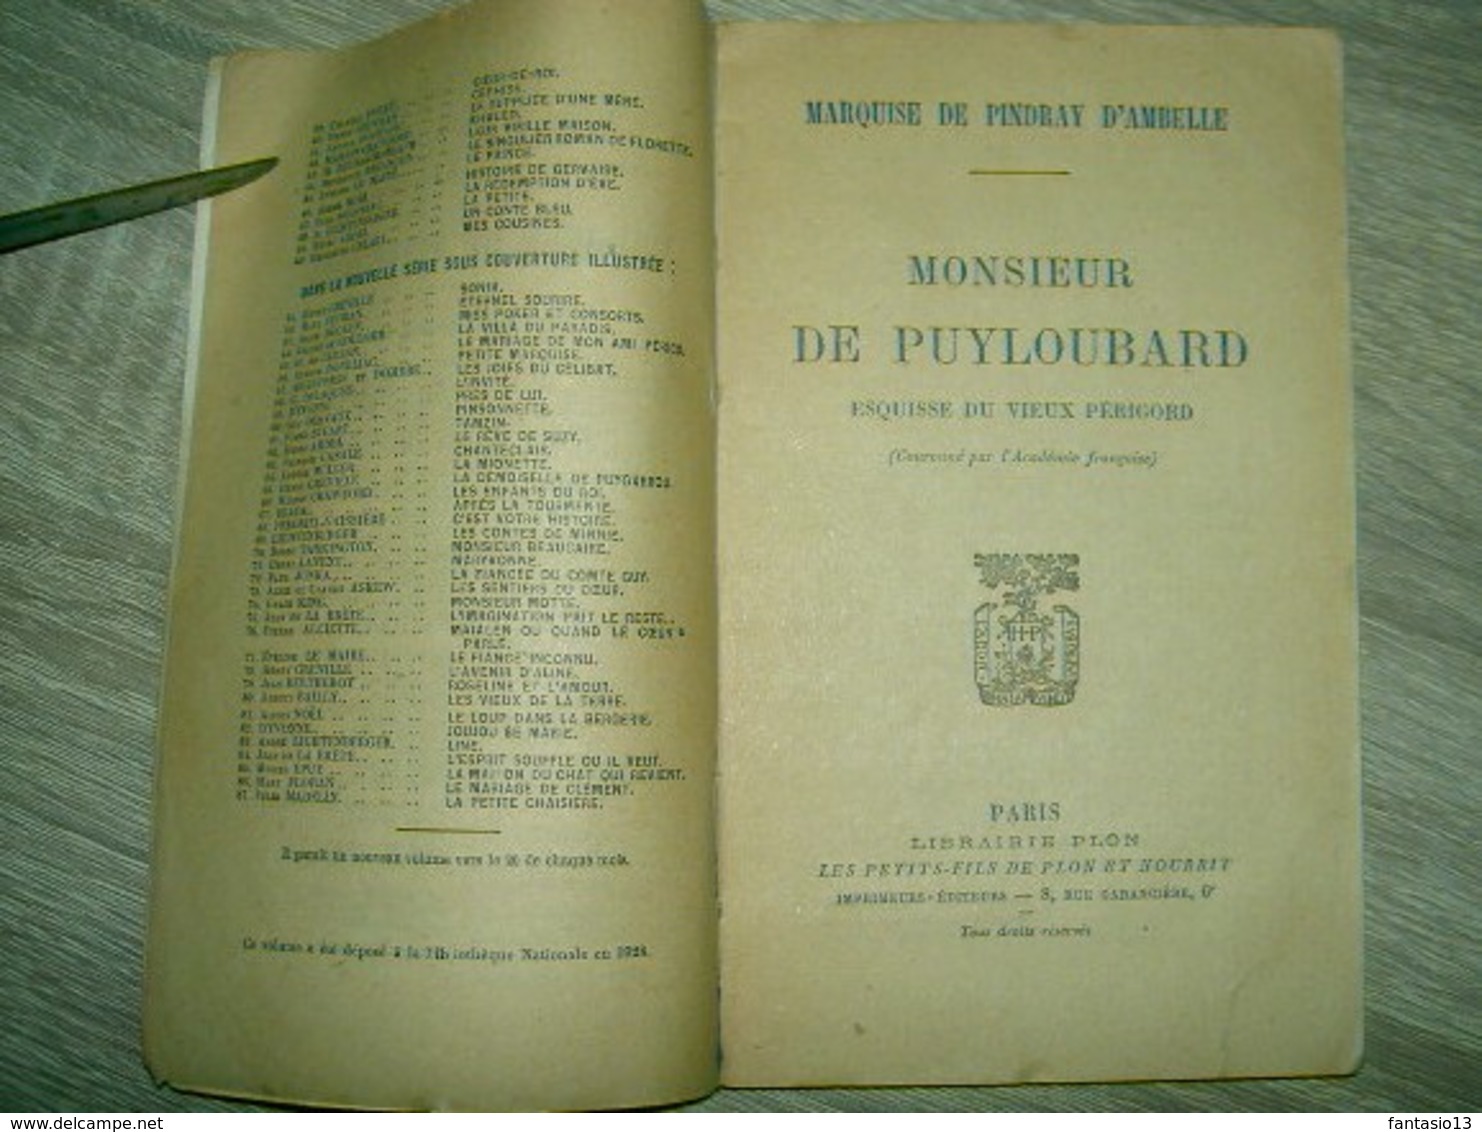 Monsieur De Puyloubard  Esquisse Du Vieux Périgord  Marquise De Pindray D'Ambelle  1928 - 1901-1940